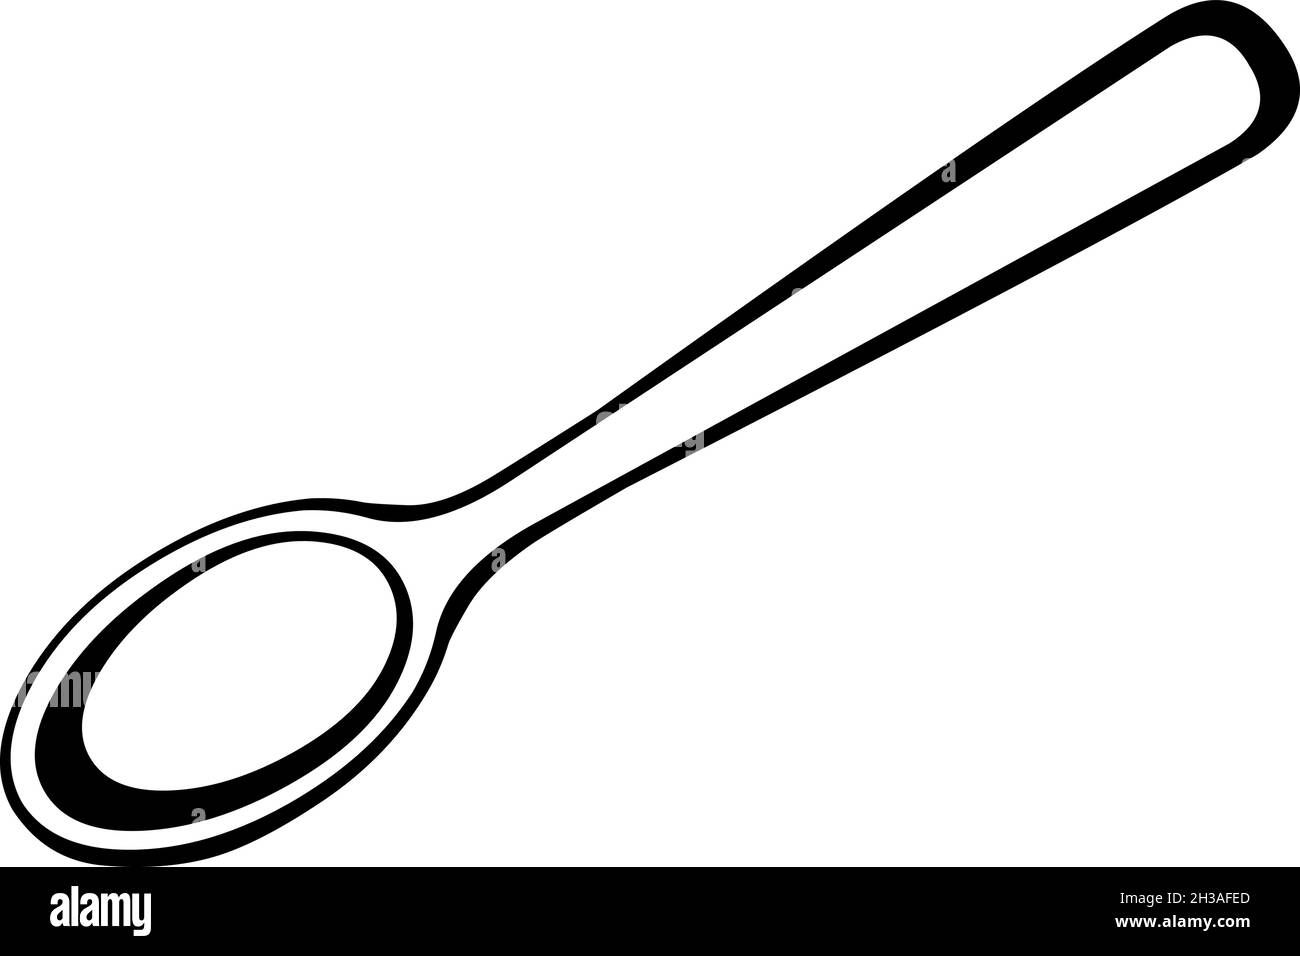 Vektor-Illustration von Schwarz-Weiß-Illustration von Löffel oder Teelöffel Stock Vektor